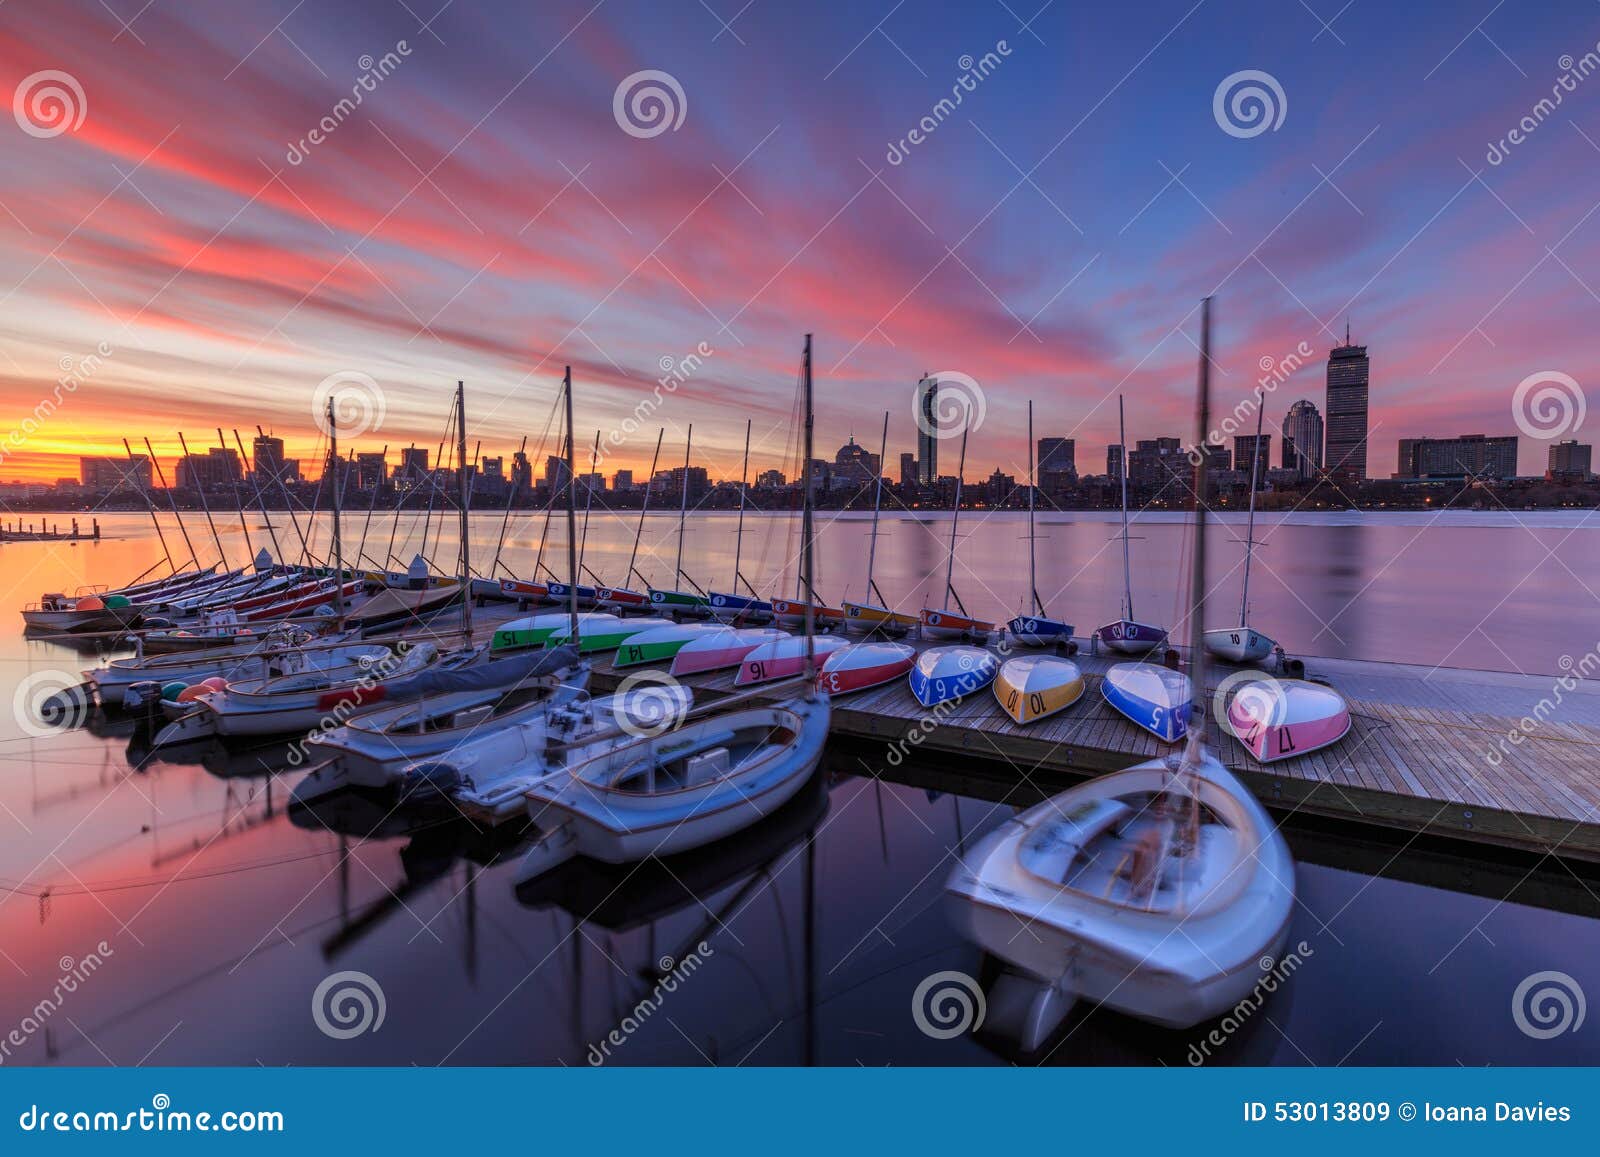 boston skyline at dawn